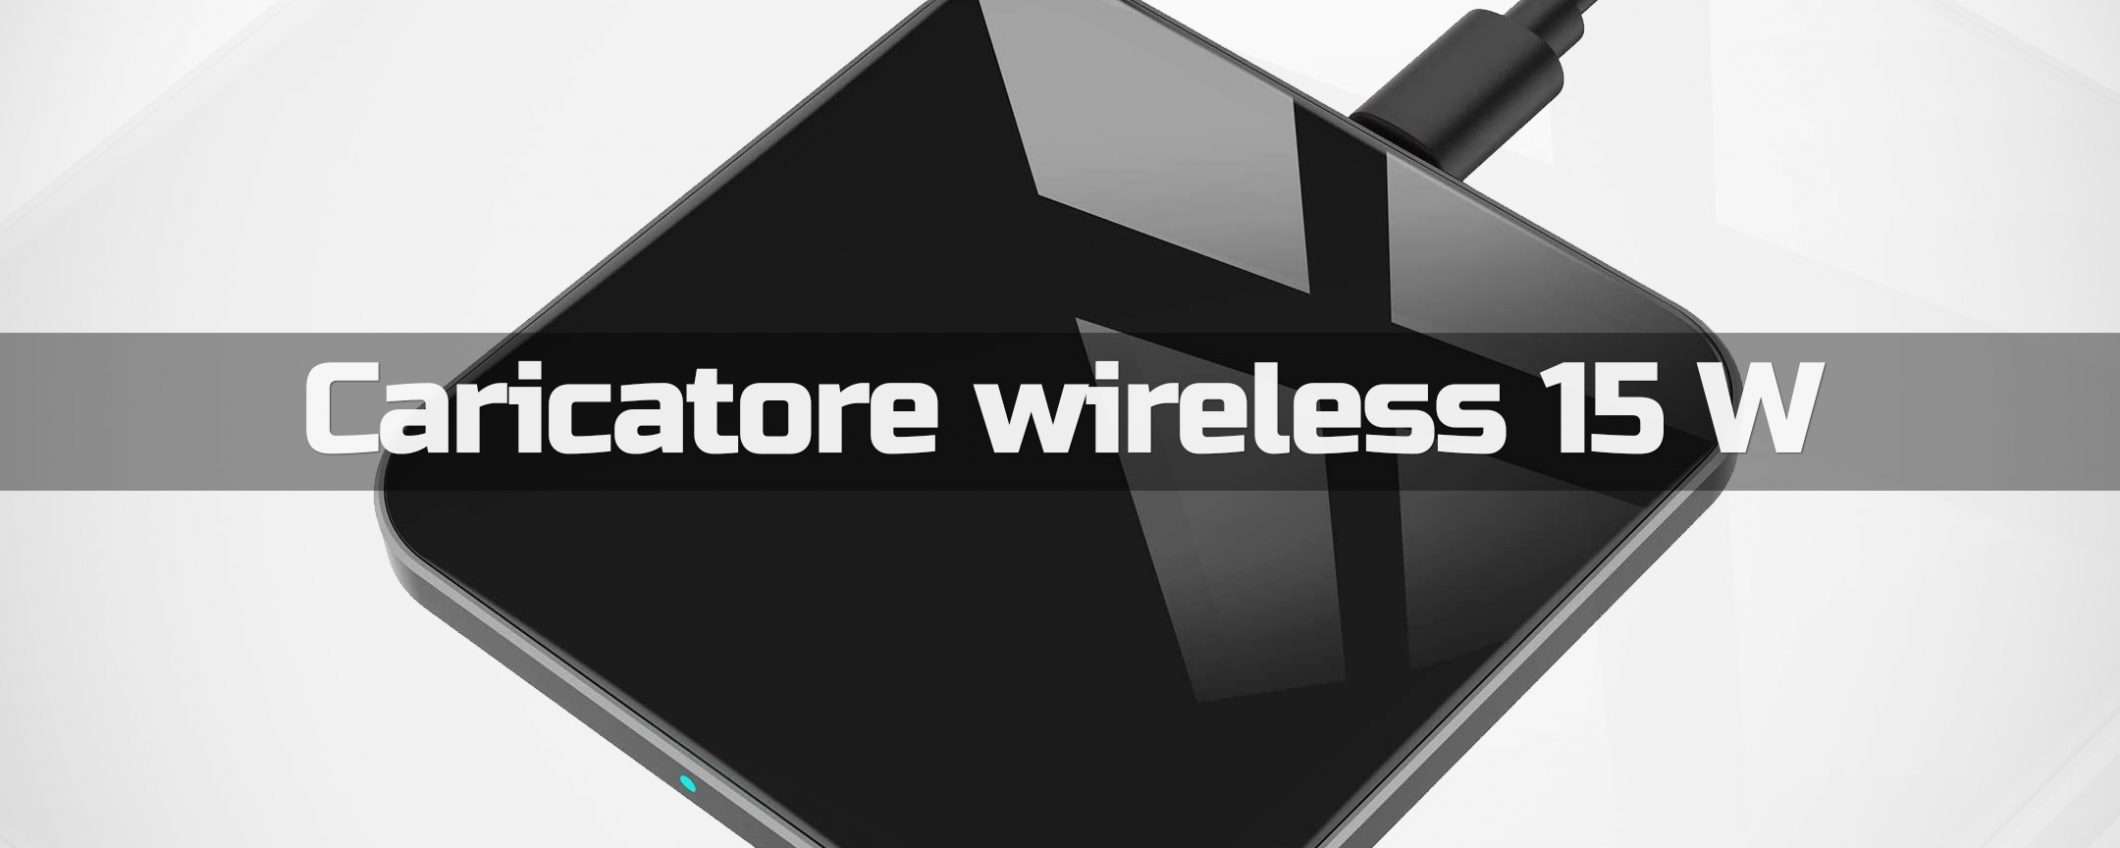 Caricatore wireless 15W (Qi): SCONTO 50% su Amazon